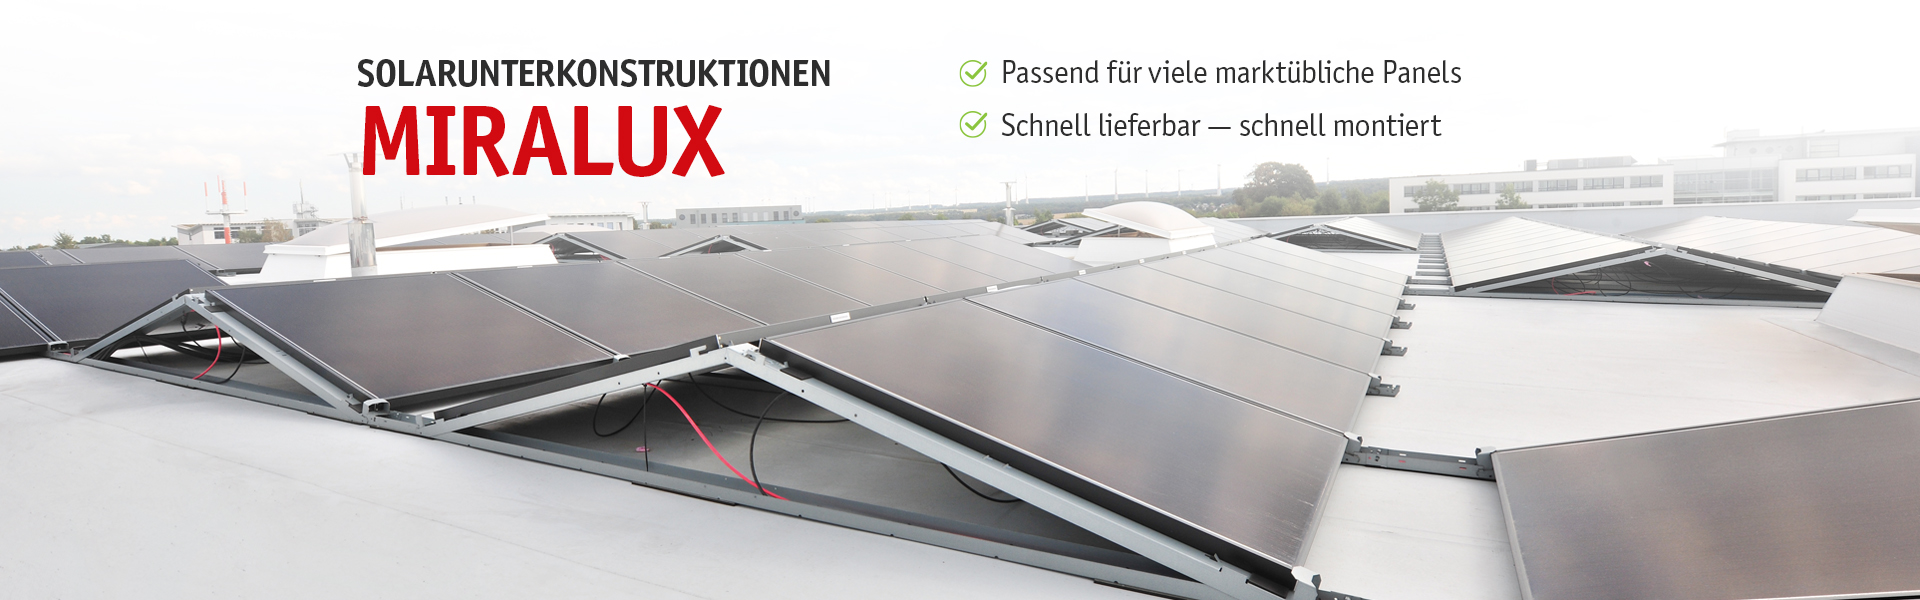 Solarkonstruktionen Miralux - Passend für viele marktübliche Panels - schnell lieferbar - schnell montiert